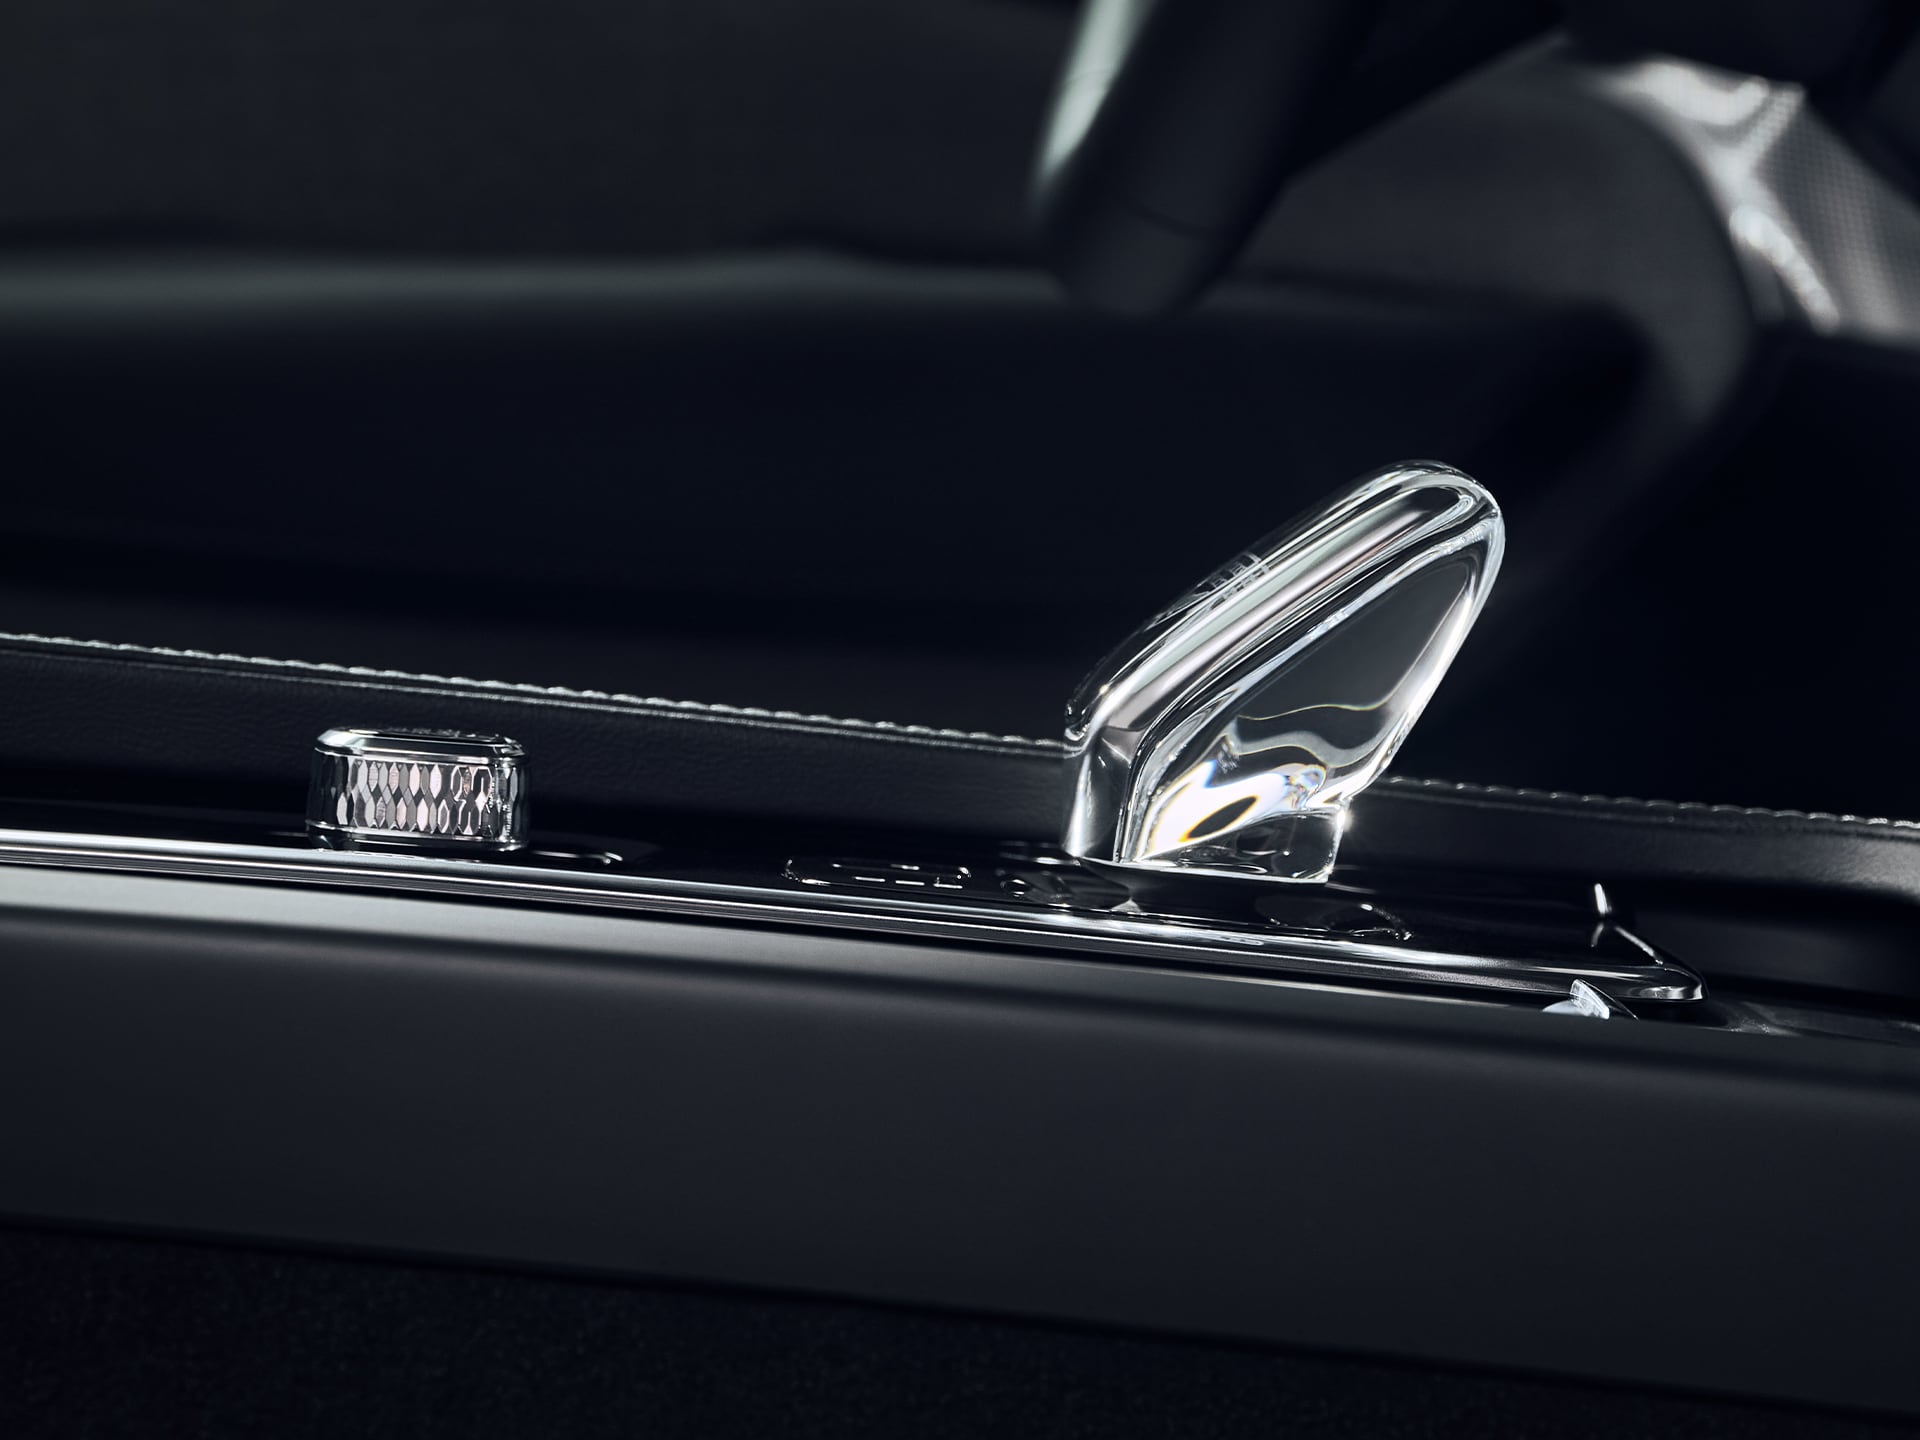 Levier de vitesse en véritable cristal suédois d'Orrefors dans une Volvo XC90.